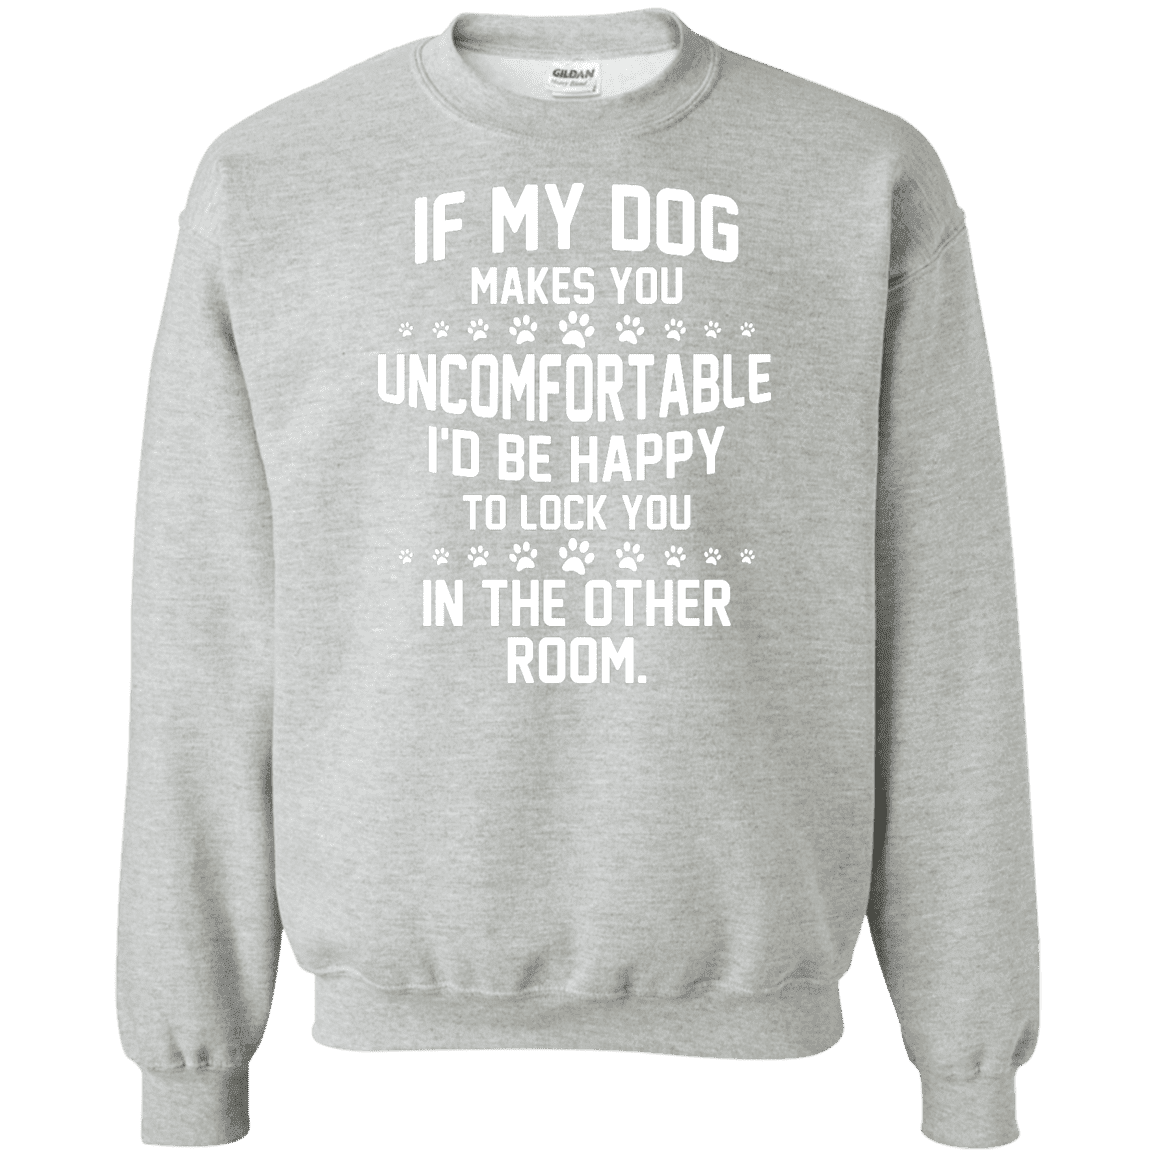 If My Dog Makes You Uncomfortable - Sweatshirt.